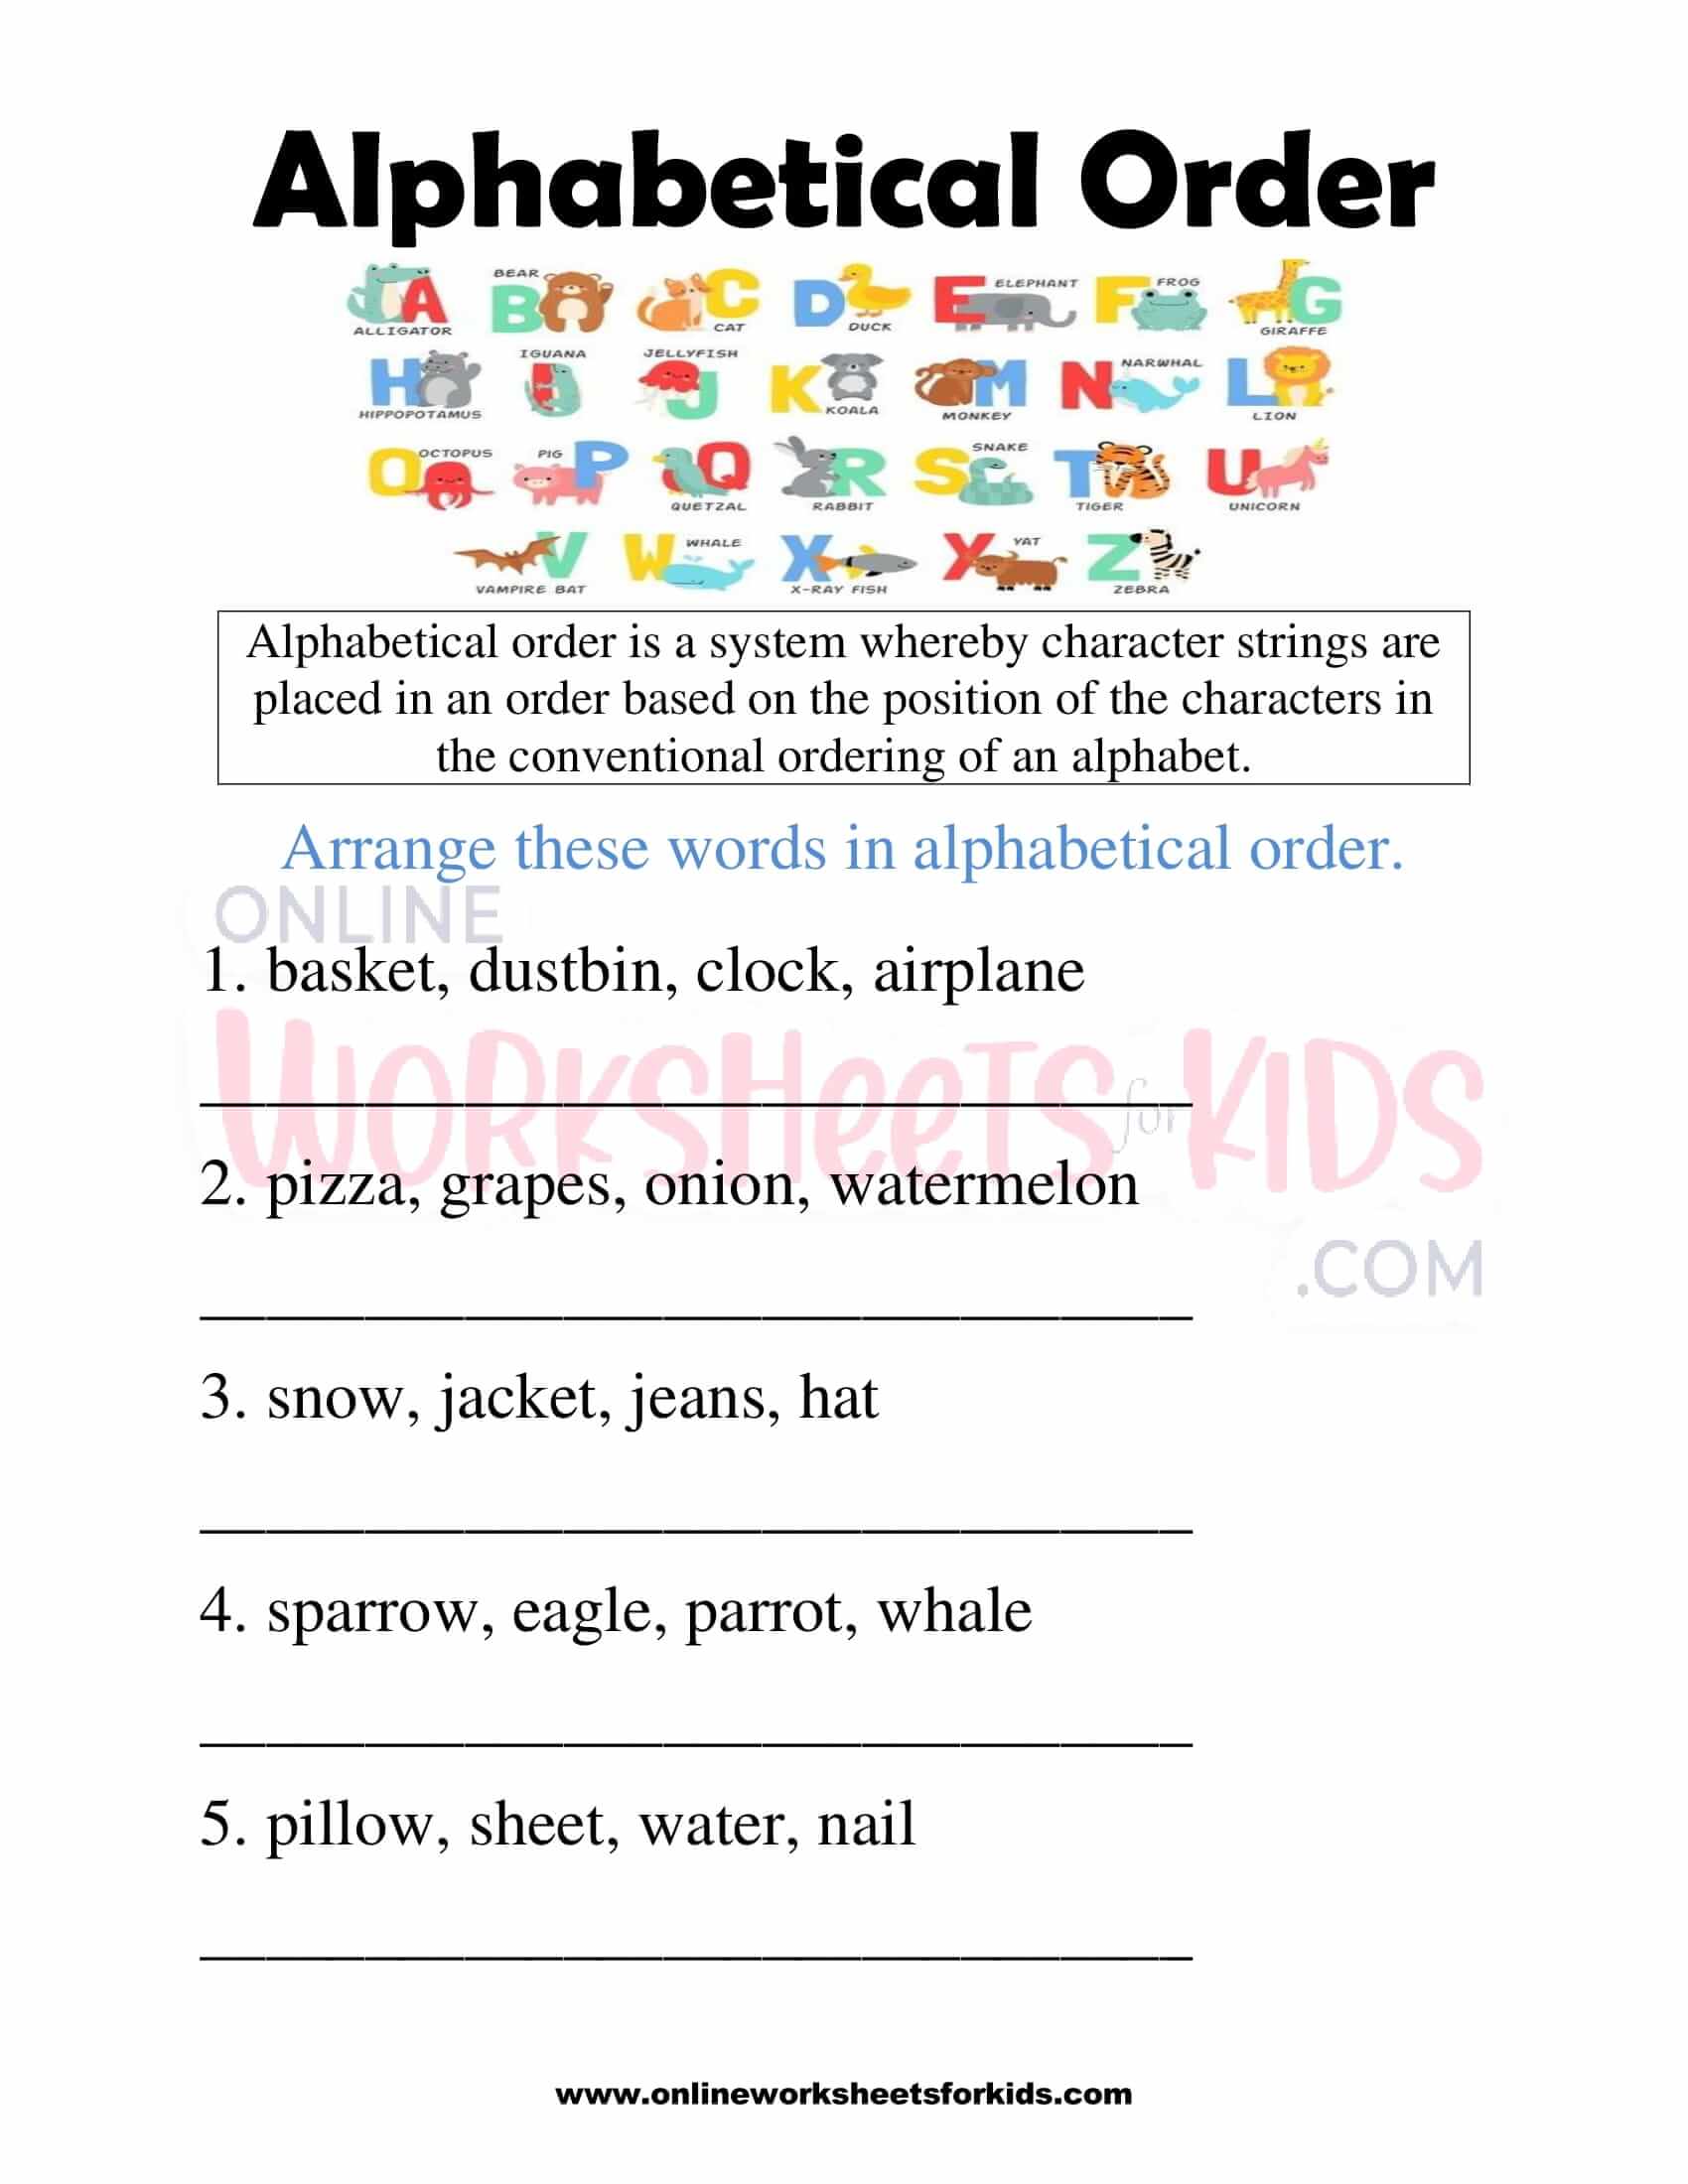 alphabetical-order-worksheets-for-grade-1-4